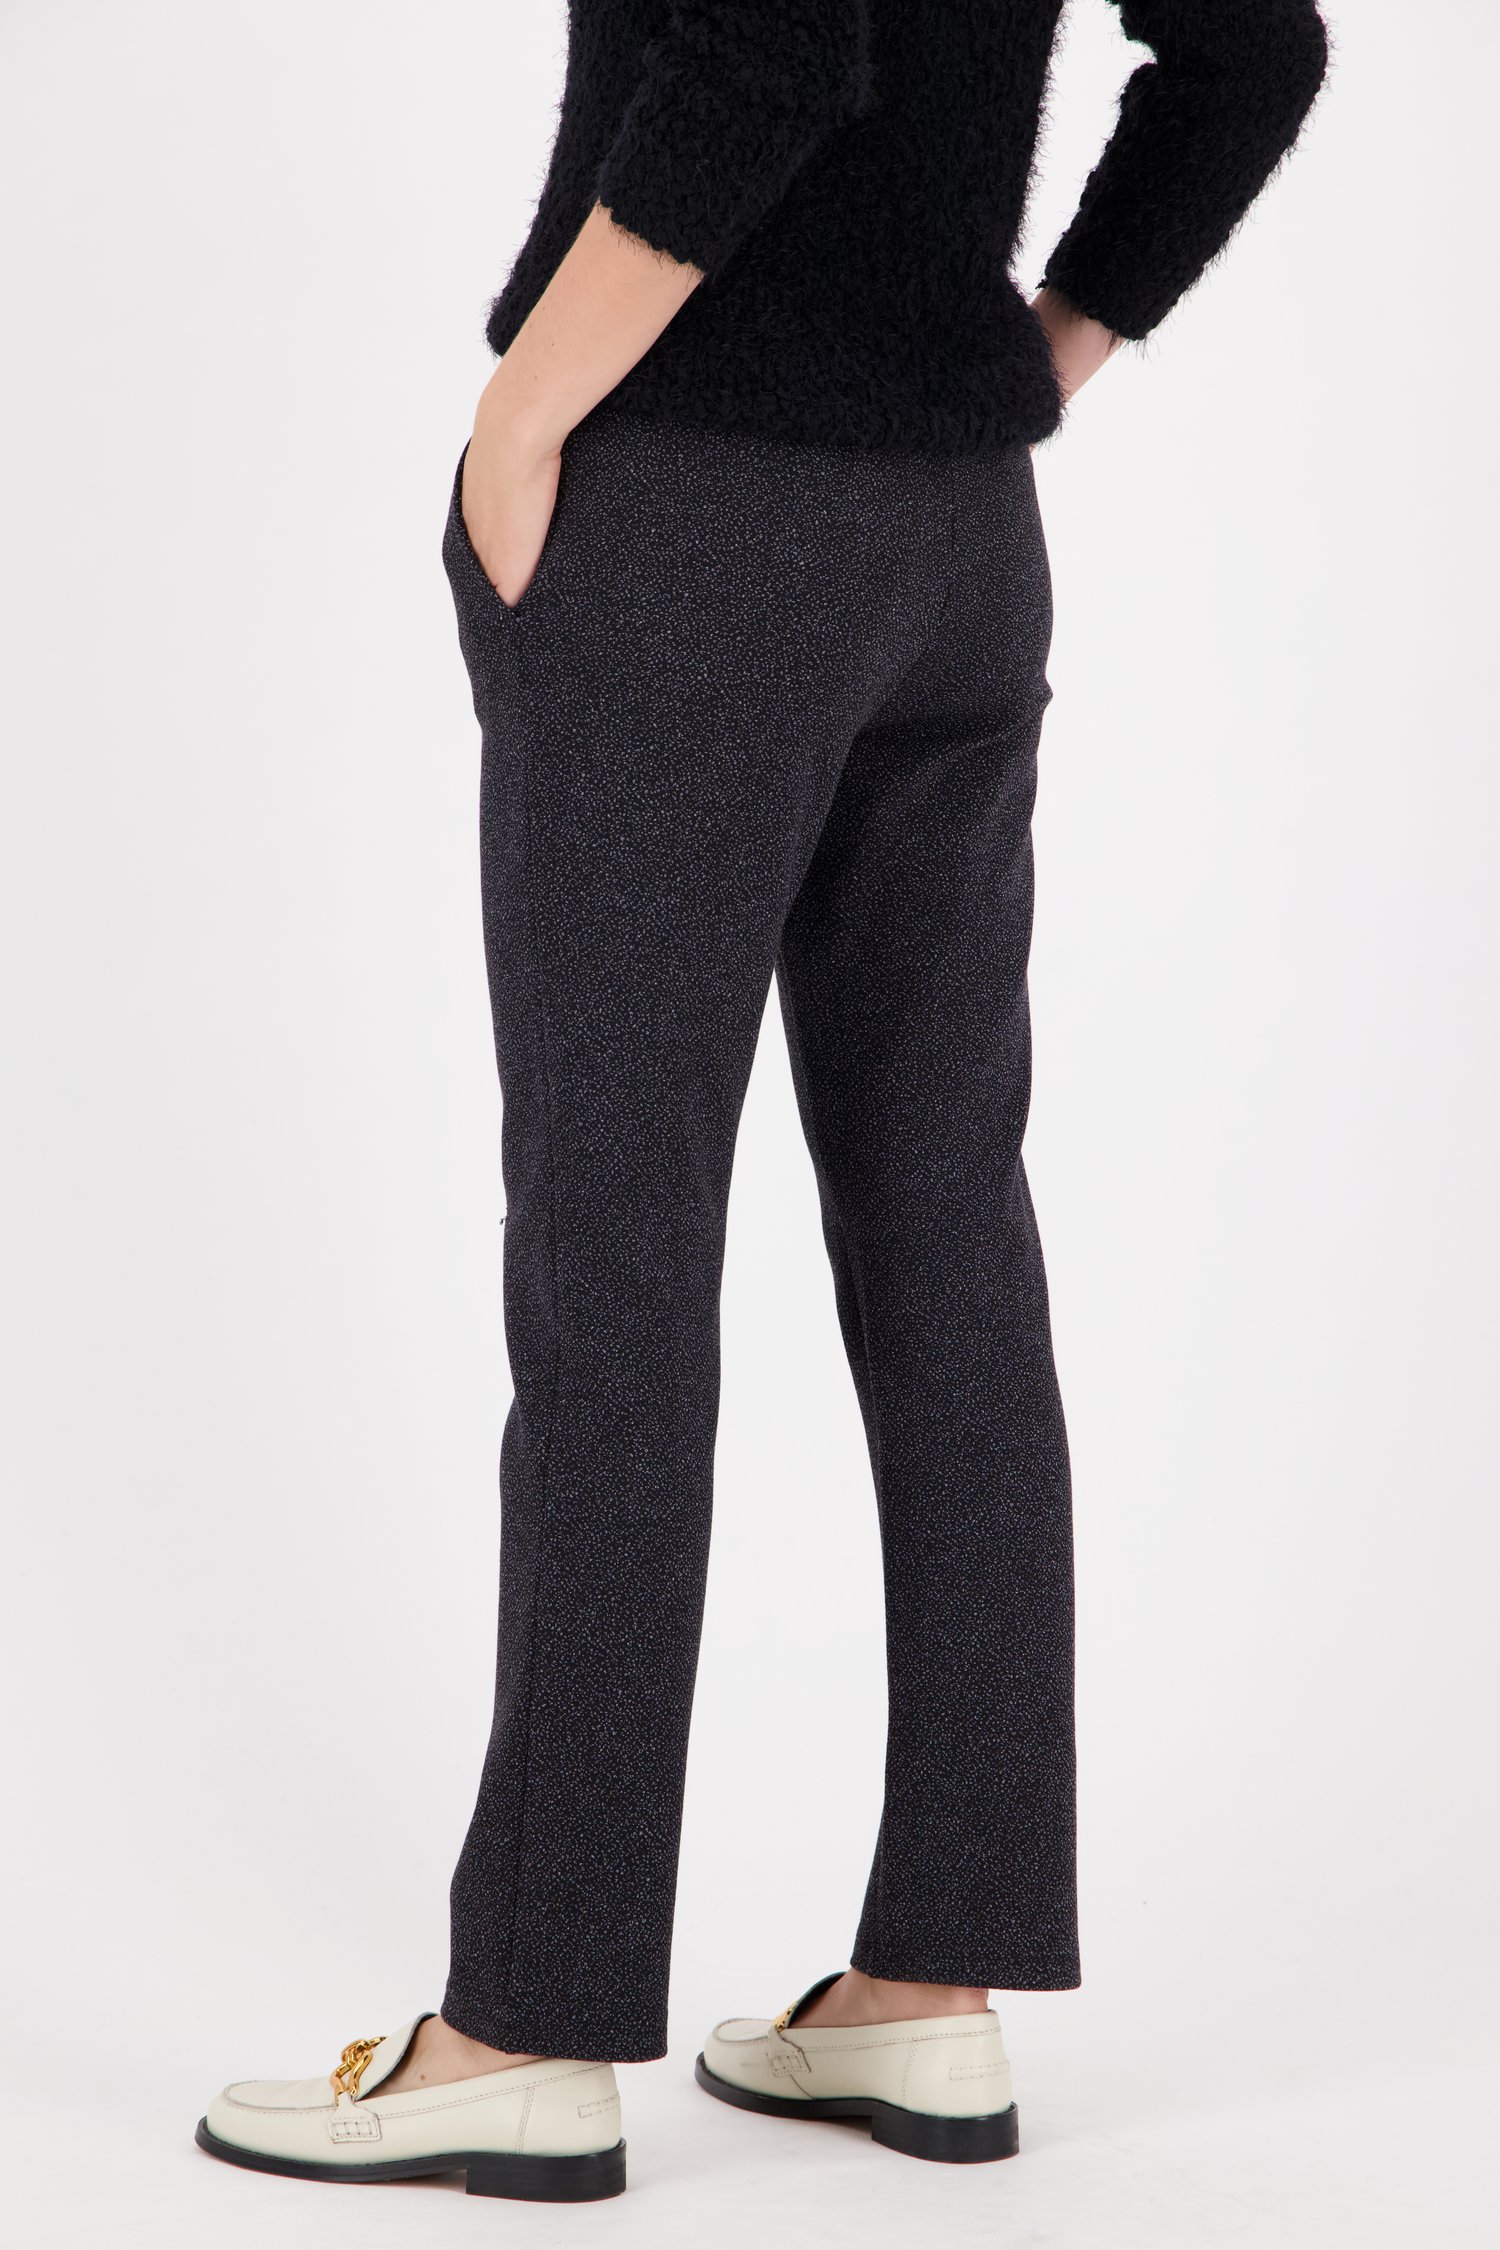 Zwarte gespikkelde broek met elastische taille van Claude Arielle voor Dames